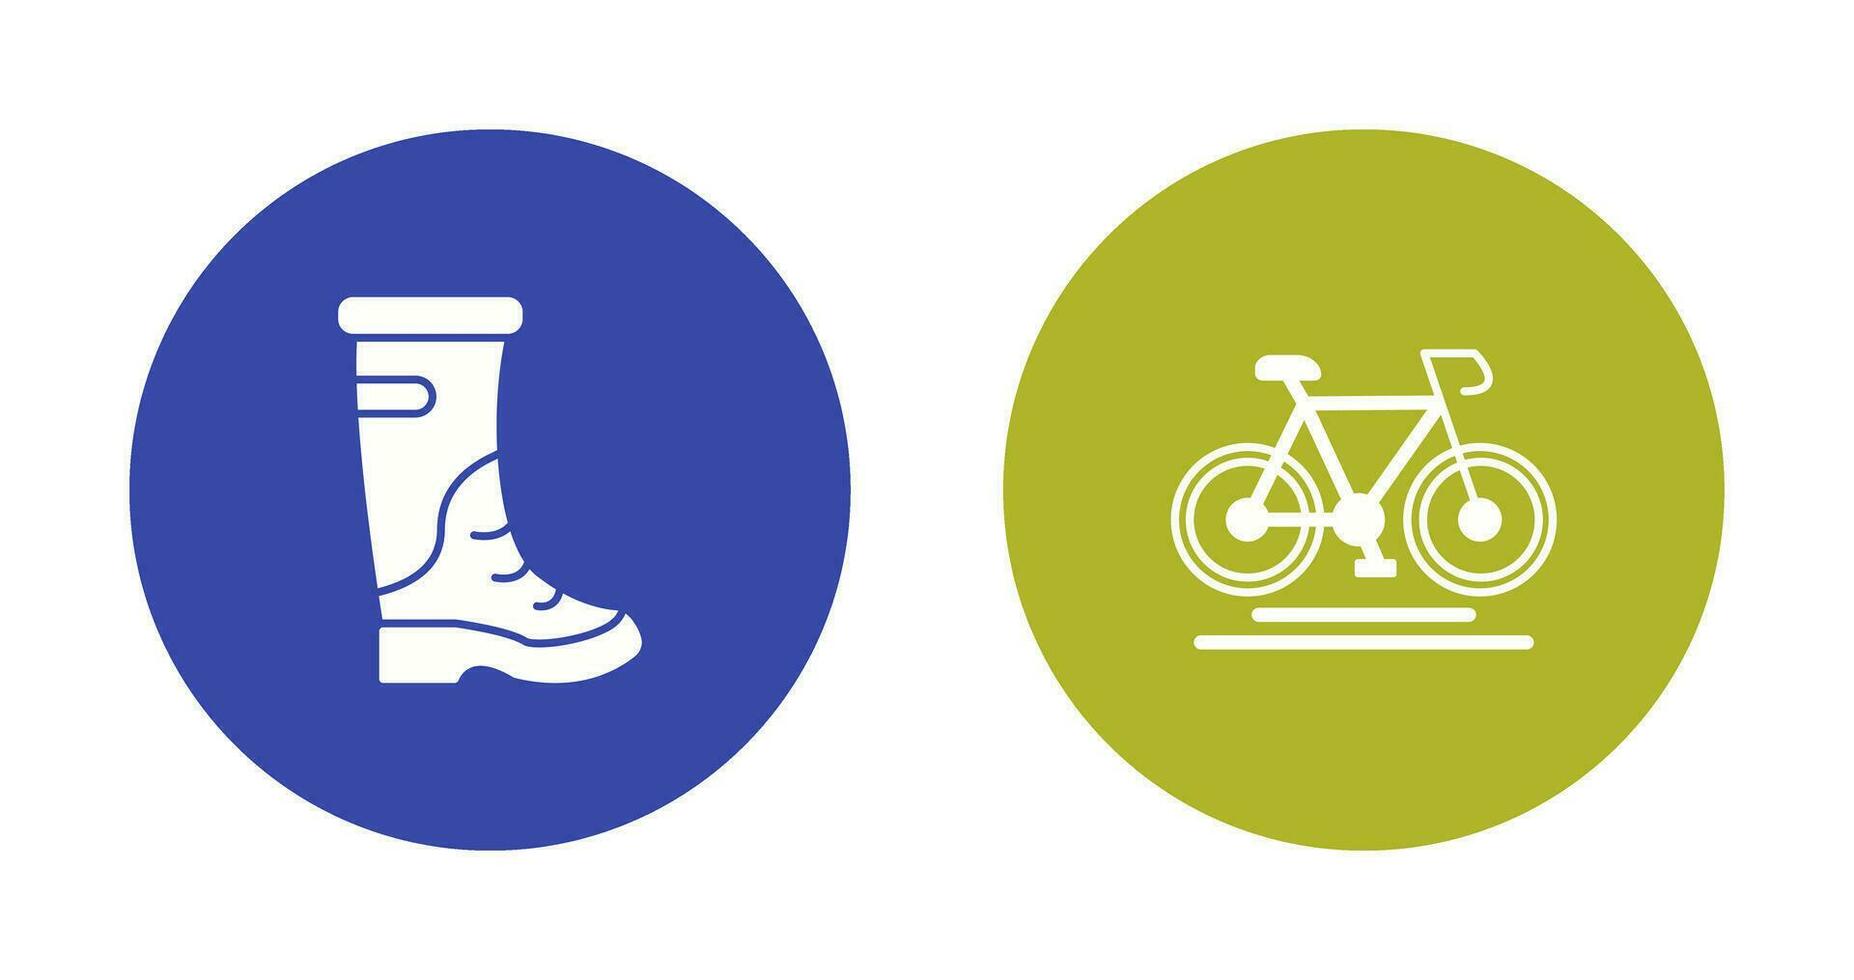 lluvia botas y ciclismo icono vector